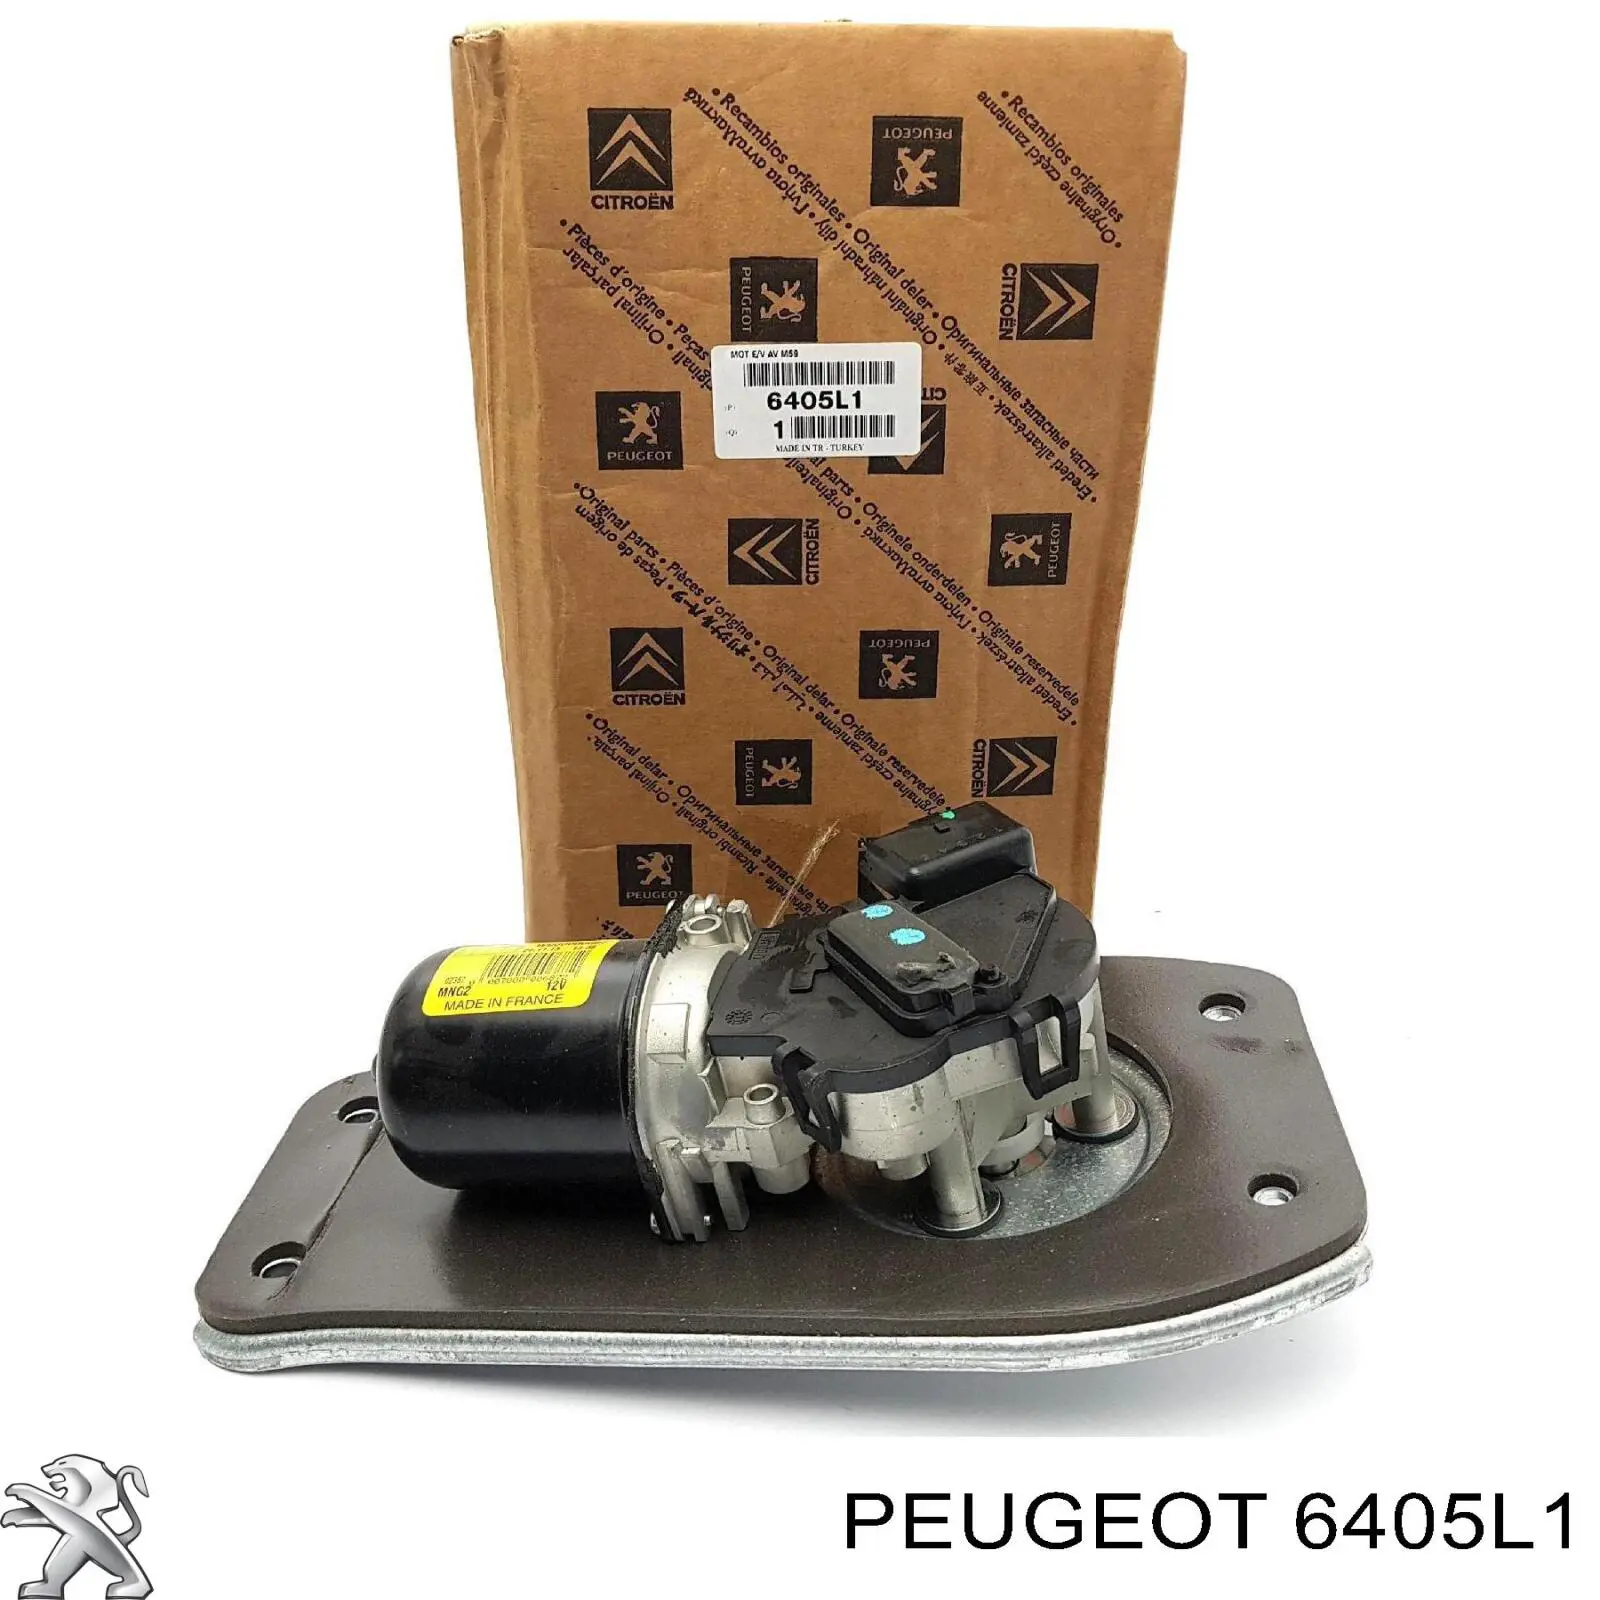 6405L1 Peugeot/Citroen motor del limpiaparabrisas del parabrisas